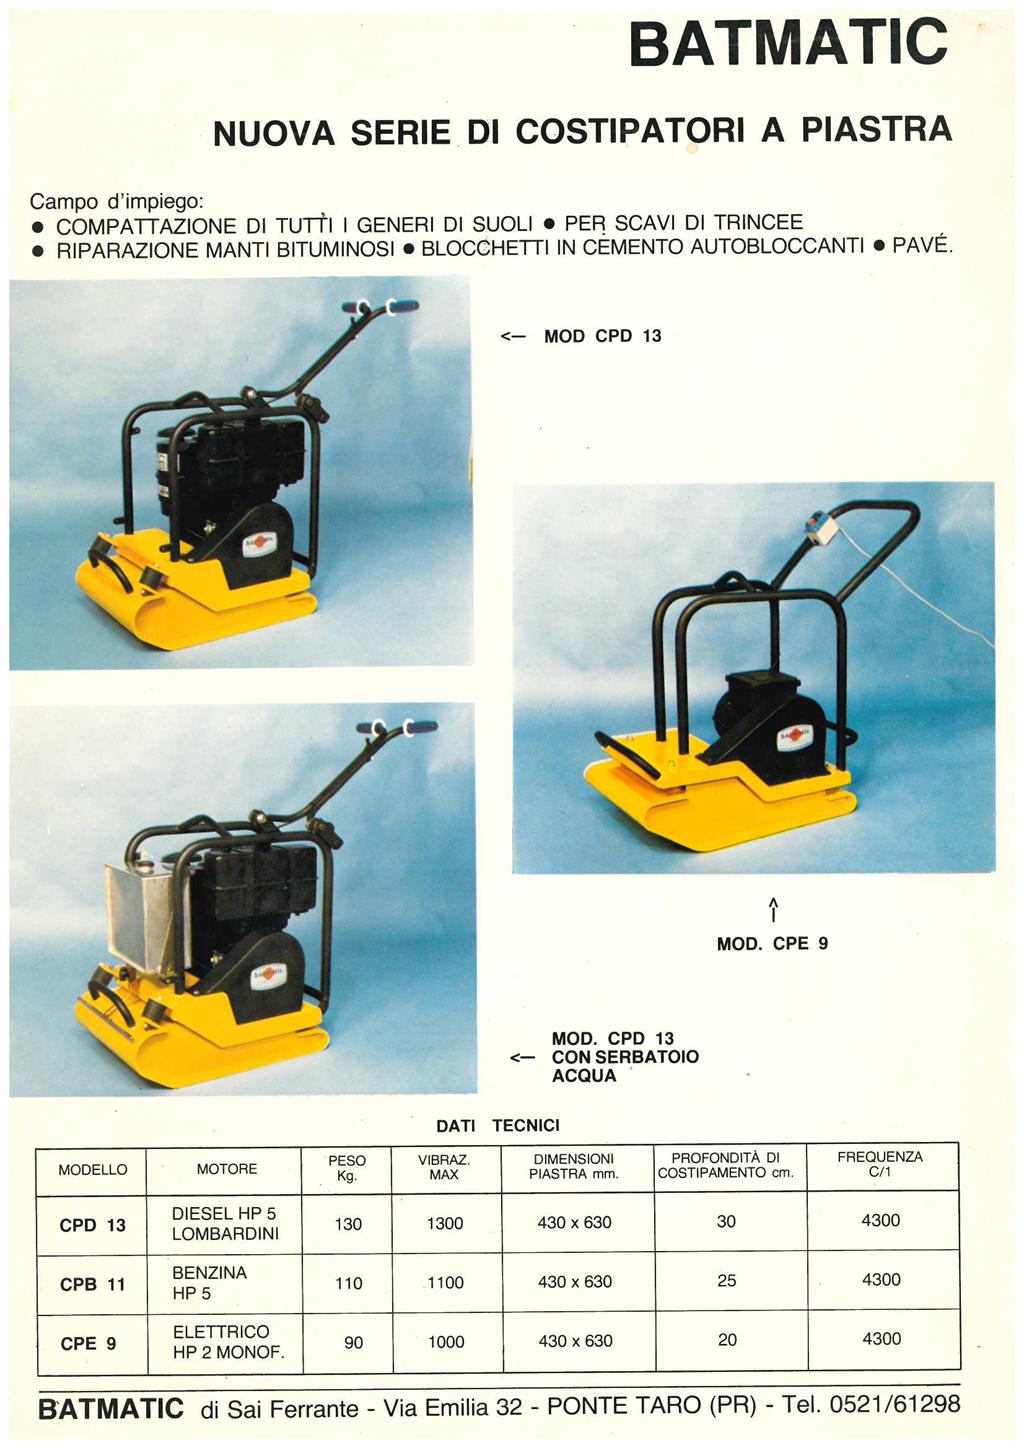 1971 - Primi modelli Batmatic